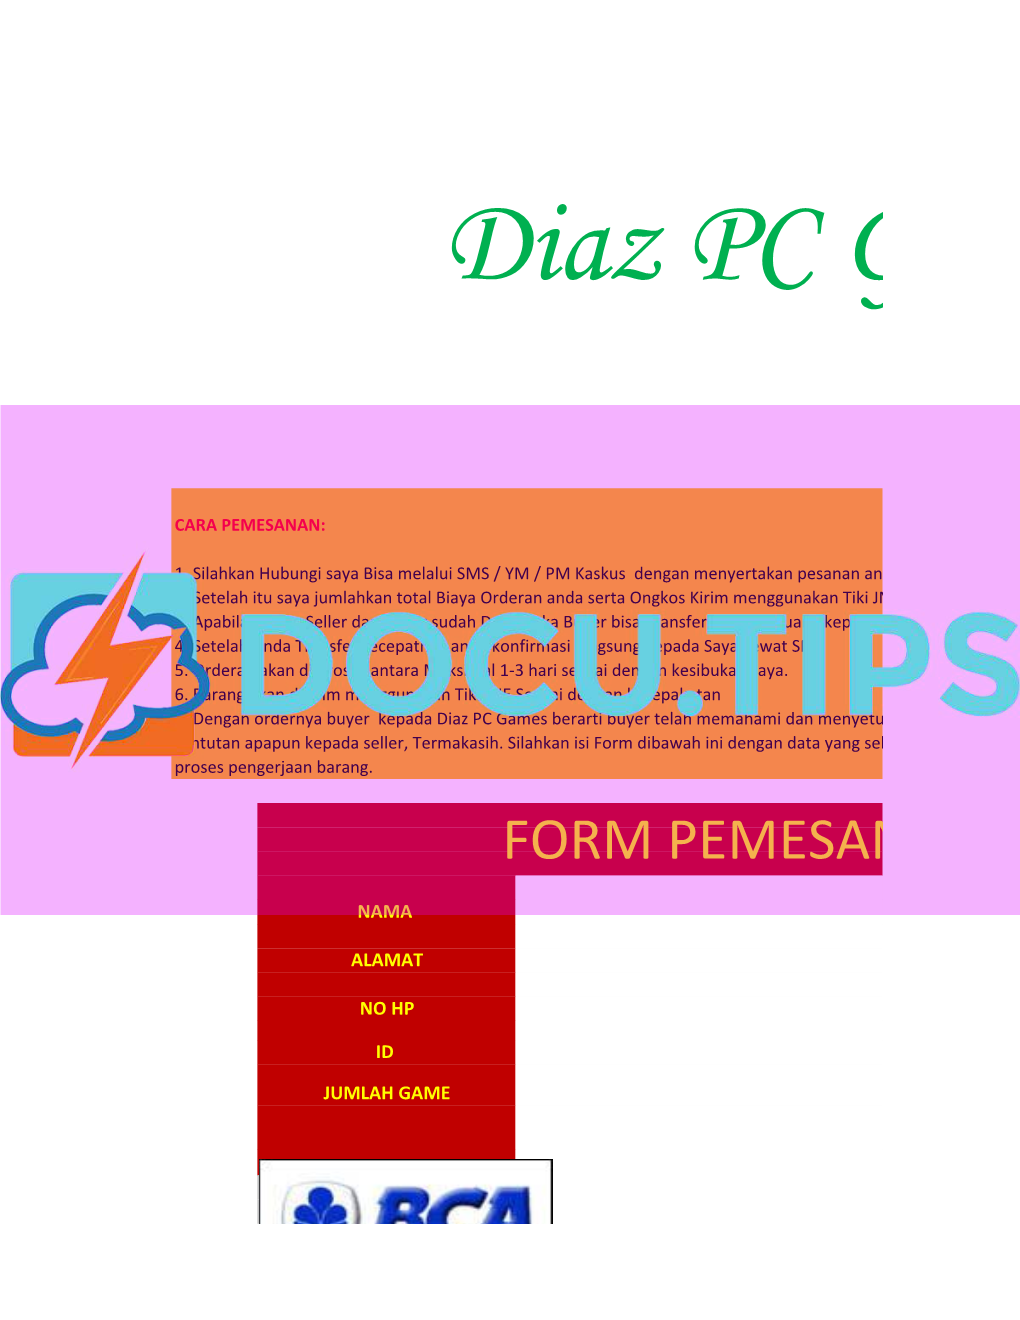 Diaz Game PC